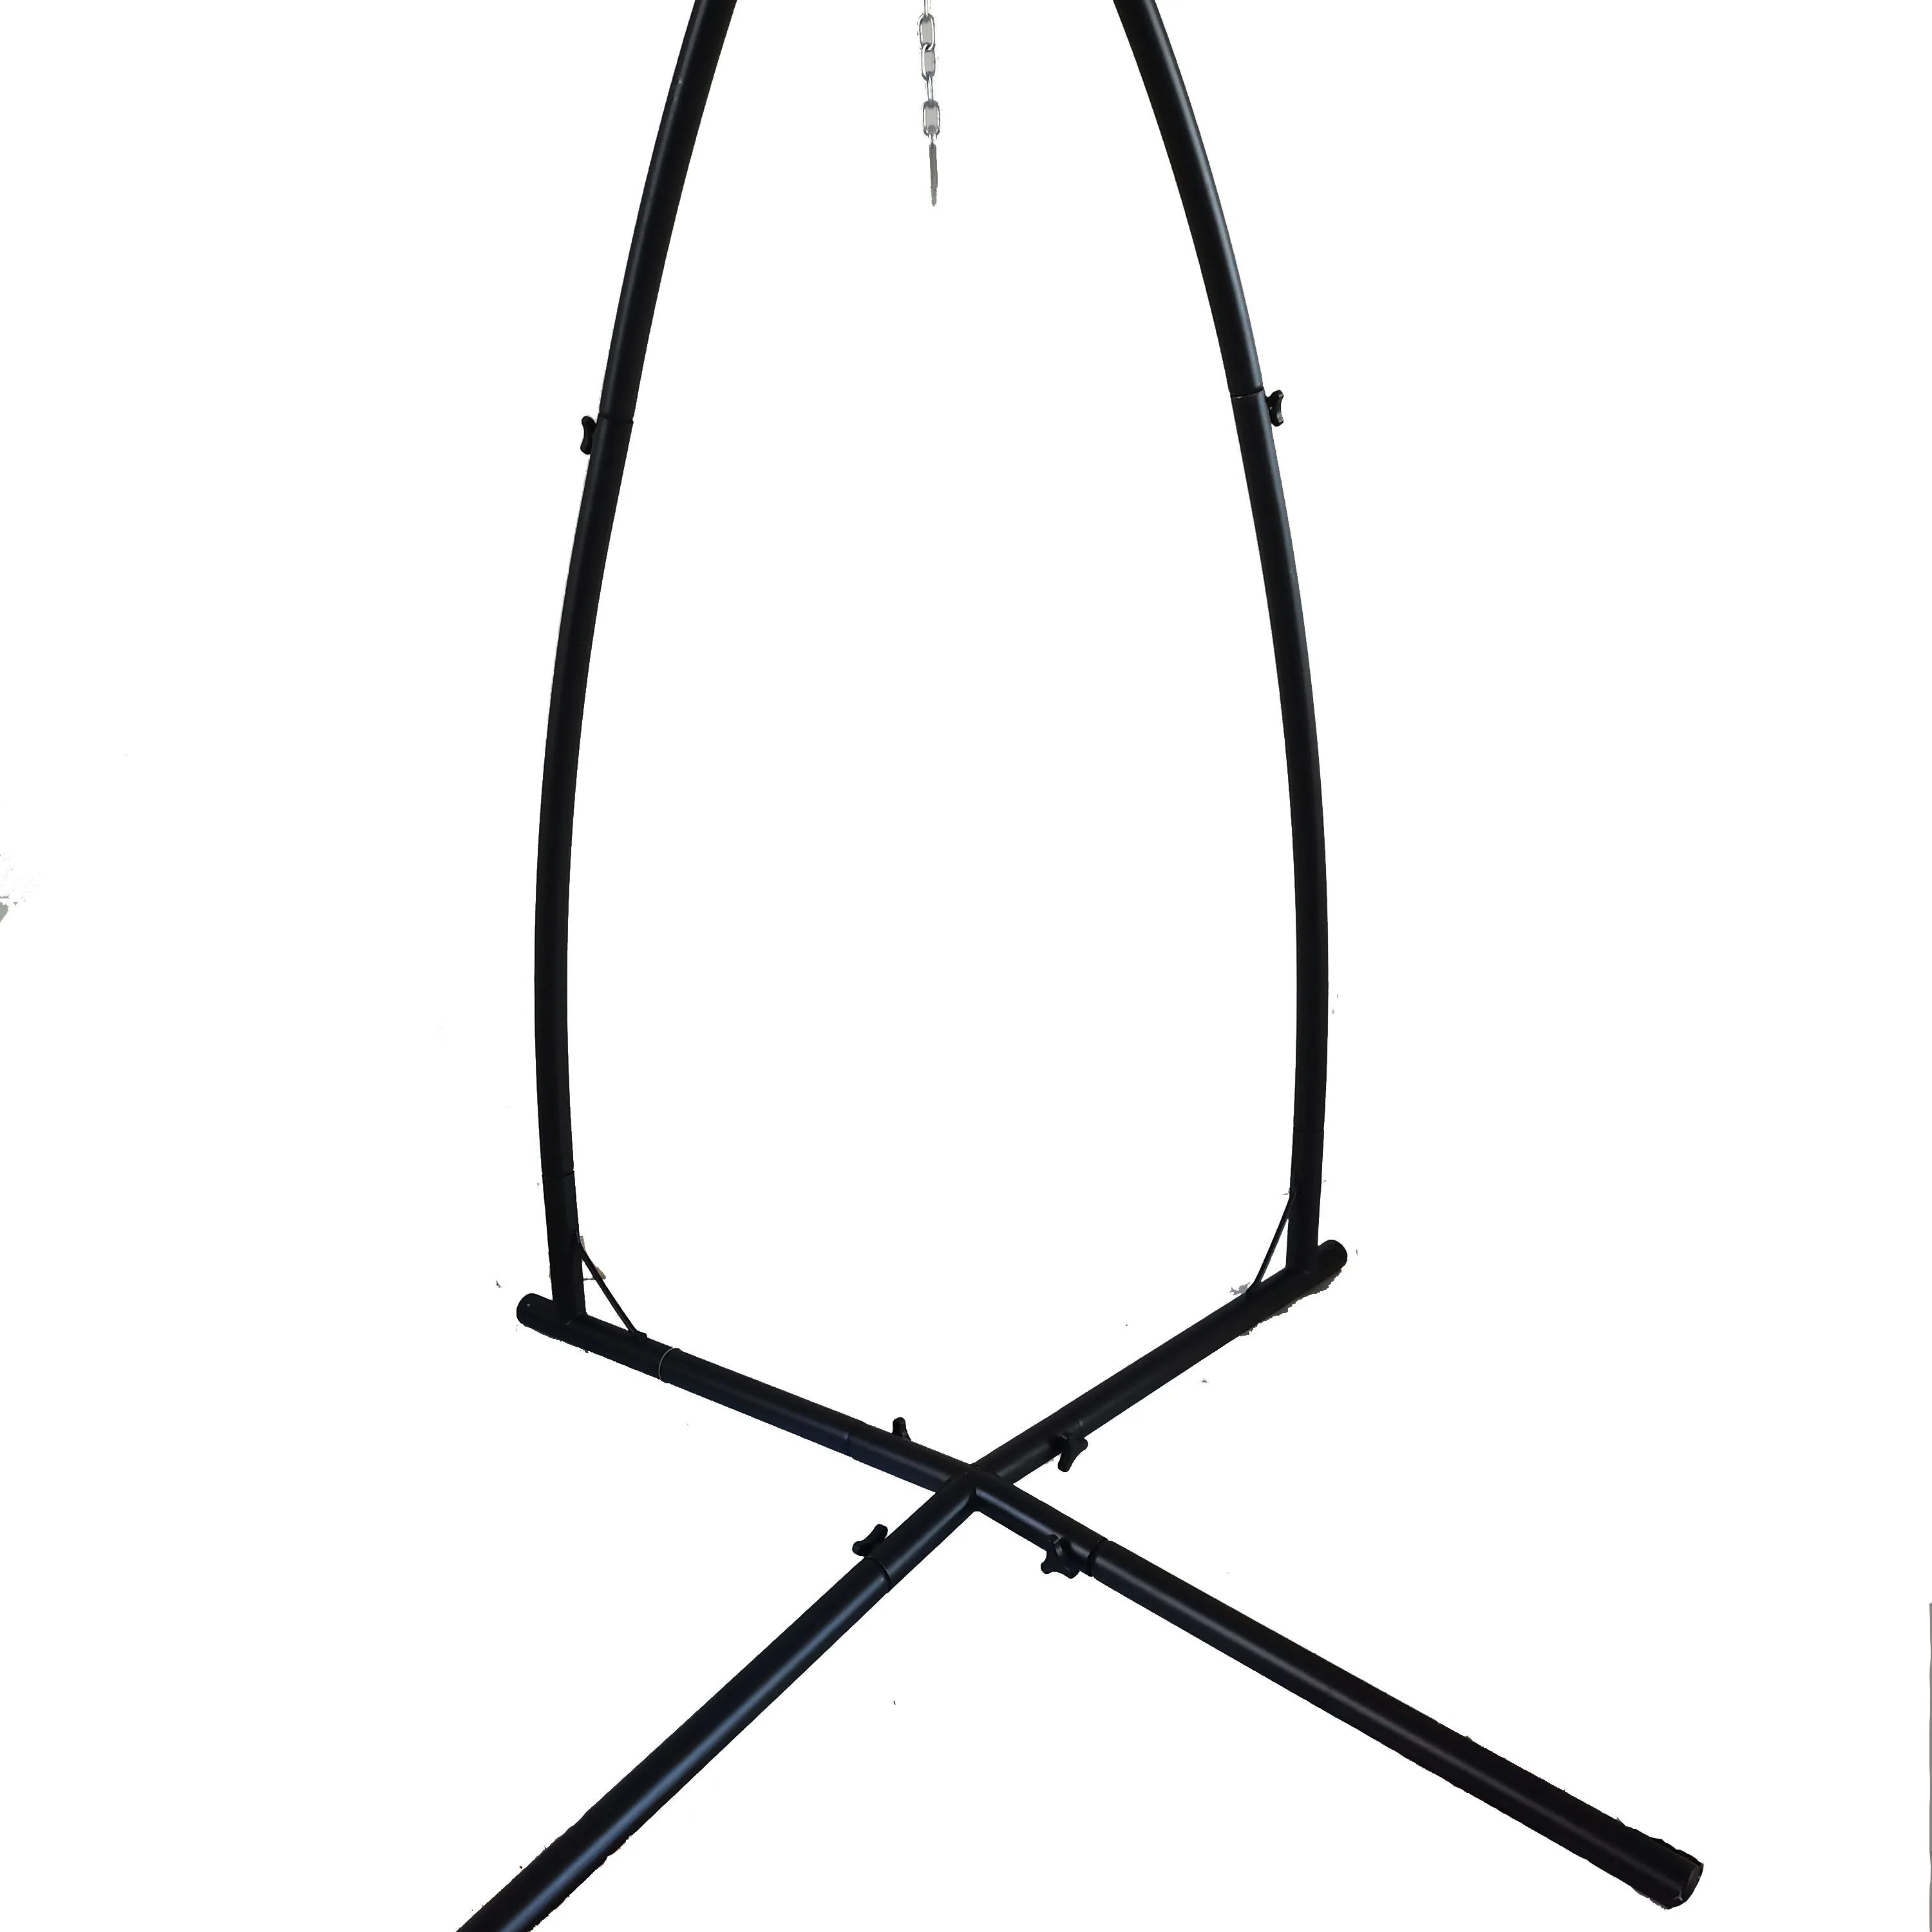 X-نوع حامل الموسع دون مسامير الأرض 49.2 "الأرجوحة الوقوف ل كرسي هزاز